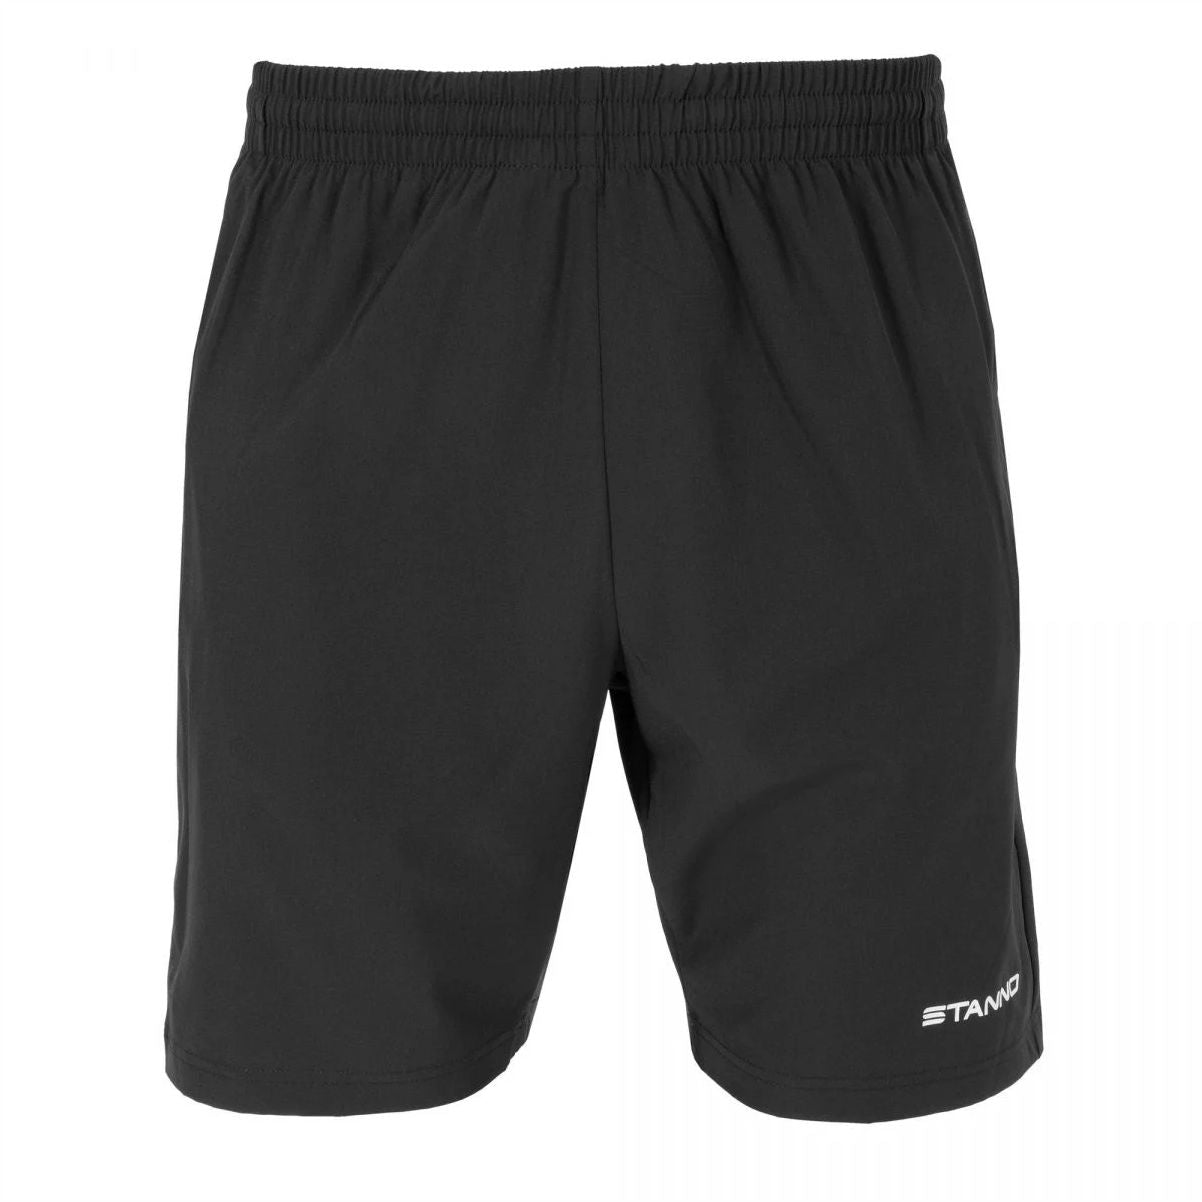 Stanno - Field Woven Shorts - Black